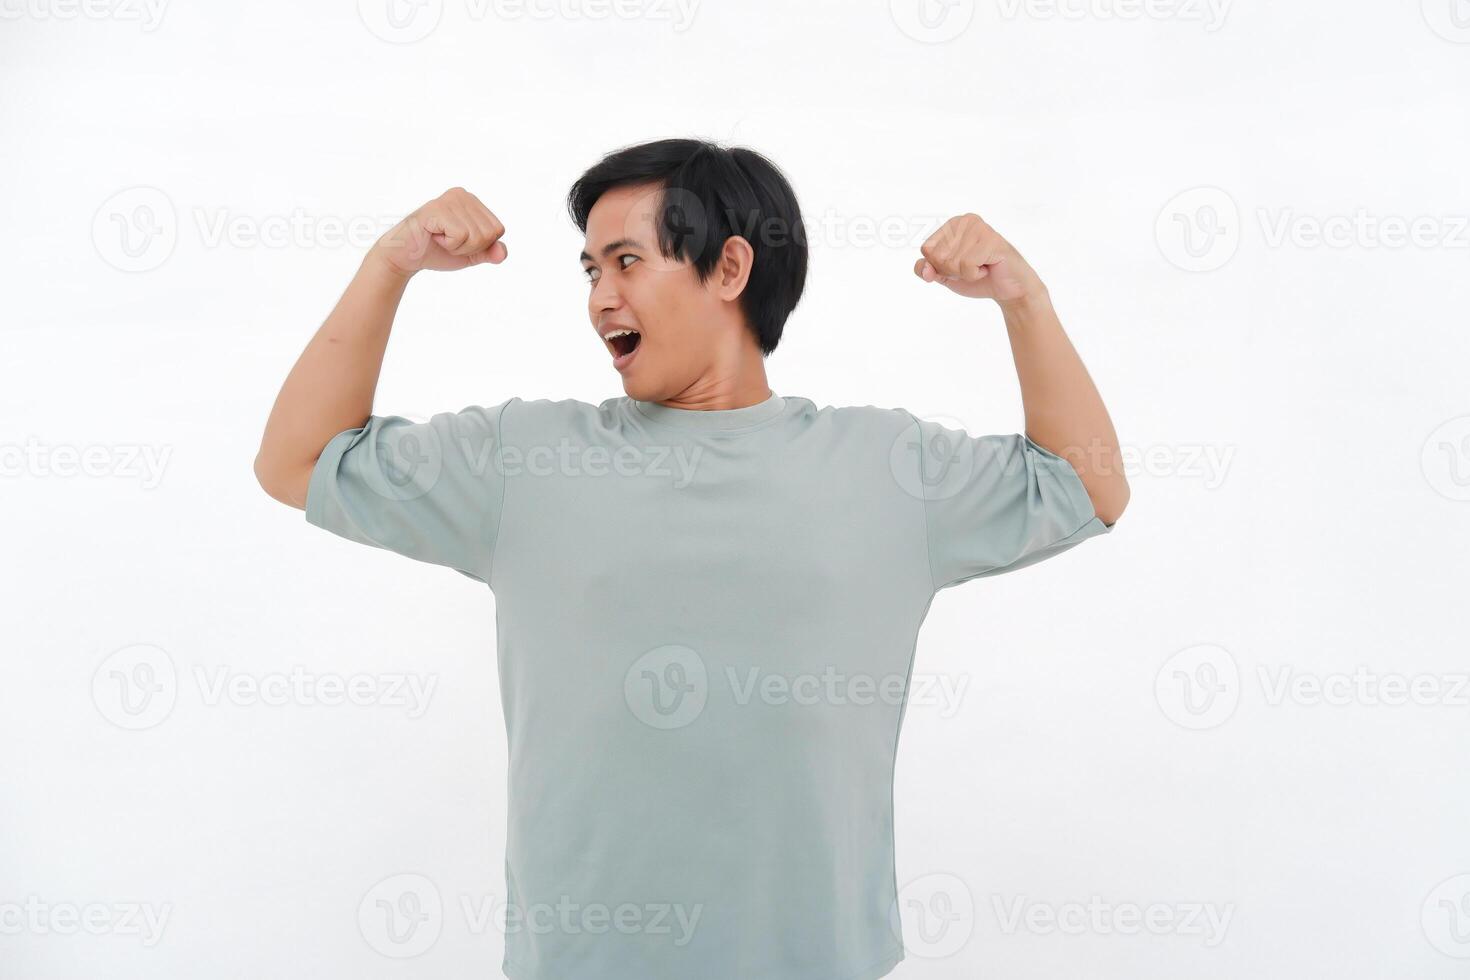 Jeune asiatique homme soulève main, exprimer force avec varié émotions de sourit à colère photo